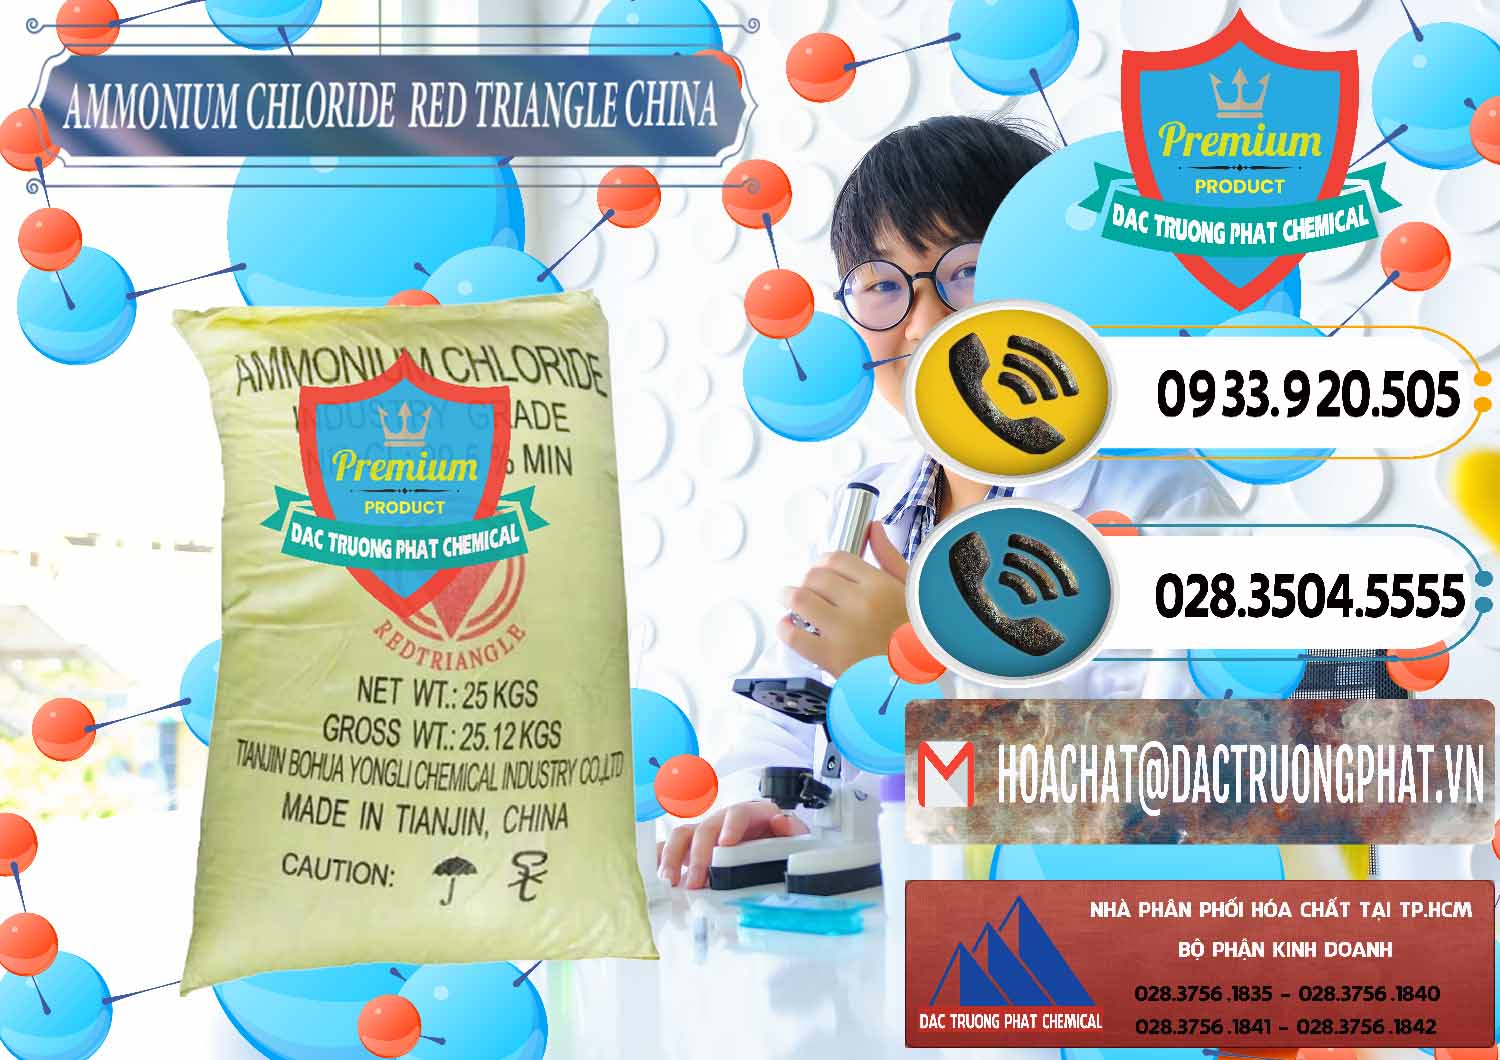 Phân phối & bán Ammonium Chloride - Muối Lạnh NH4CL Red Triangle Trung Quốc China - 0377 - Nơi chuyên cung ứng ( phân phối ) hóa chất tại TP.HCM - hoachatdetnhuom.vn